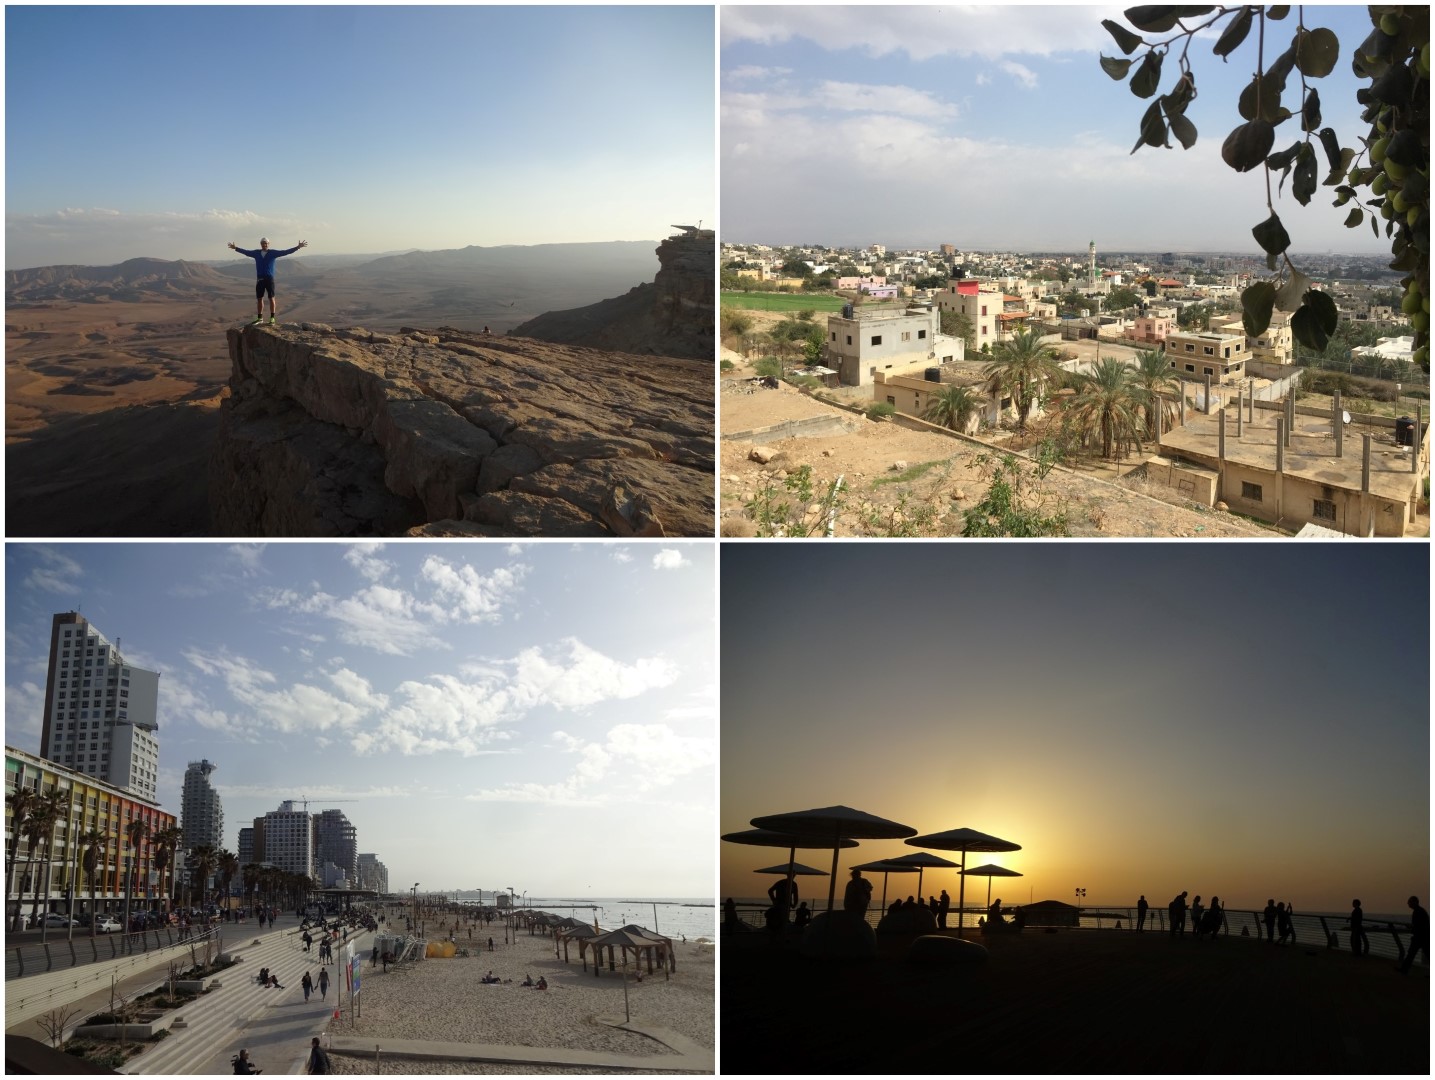 Urlaub und Lauftraining in Israel